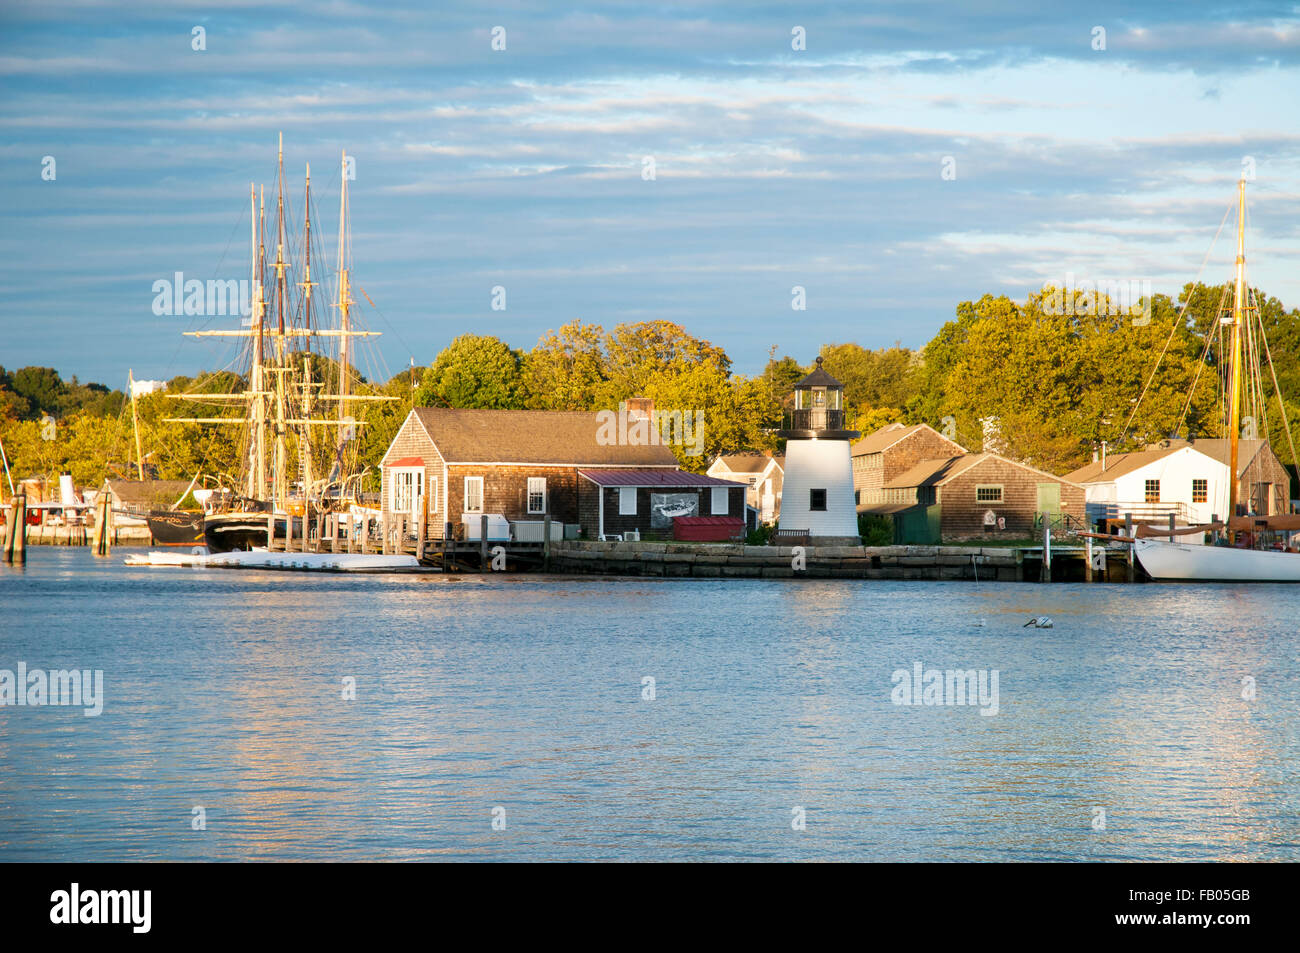 Puesta de sol por Mystic Seaport, cruzando el río, una piscina recreado aldea del siglo xix y museo marítimo educativo con la réplica del faro. Foto de stock